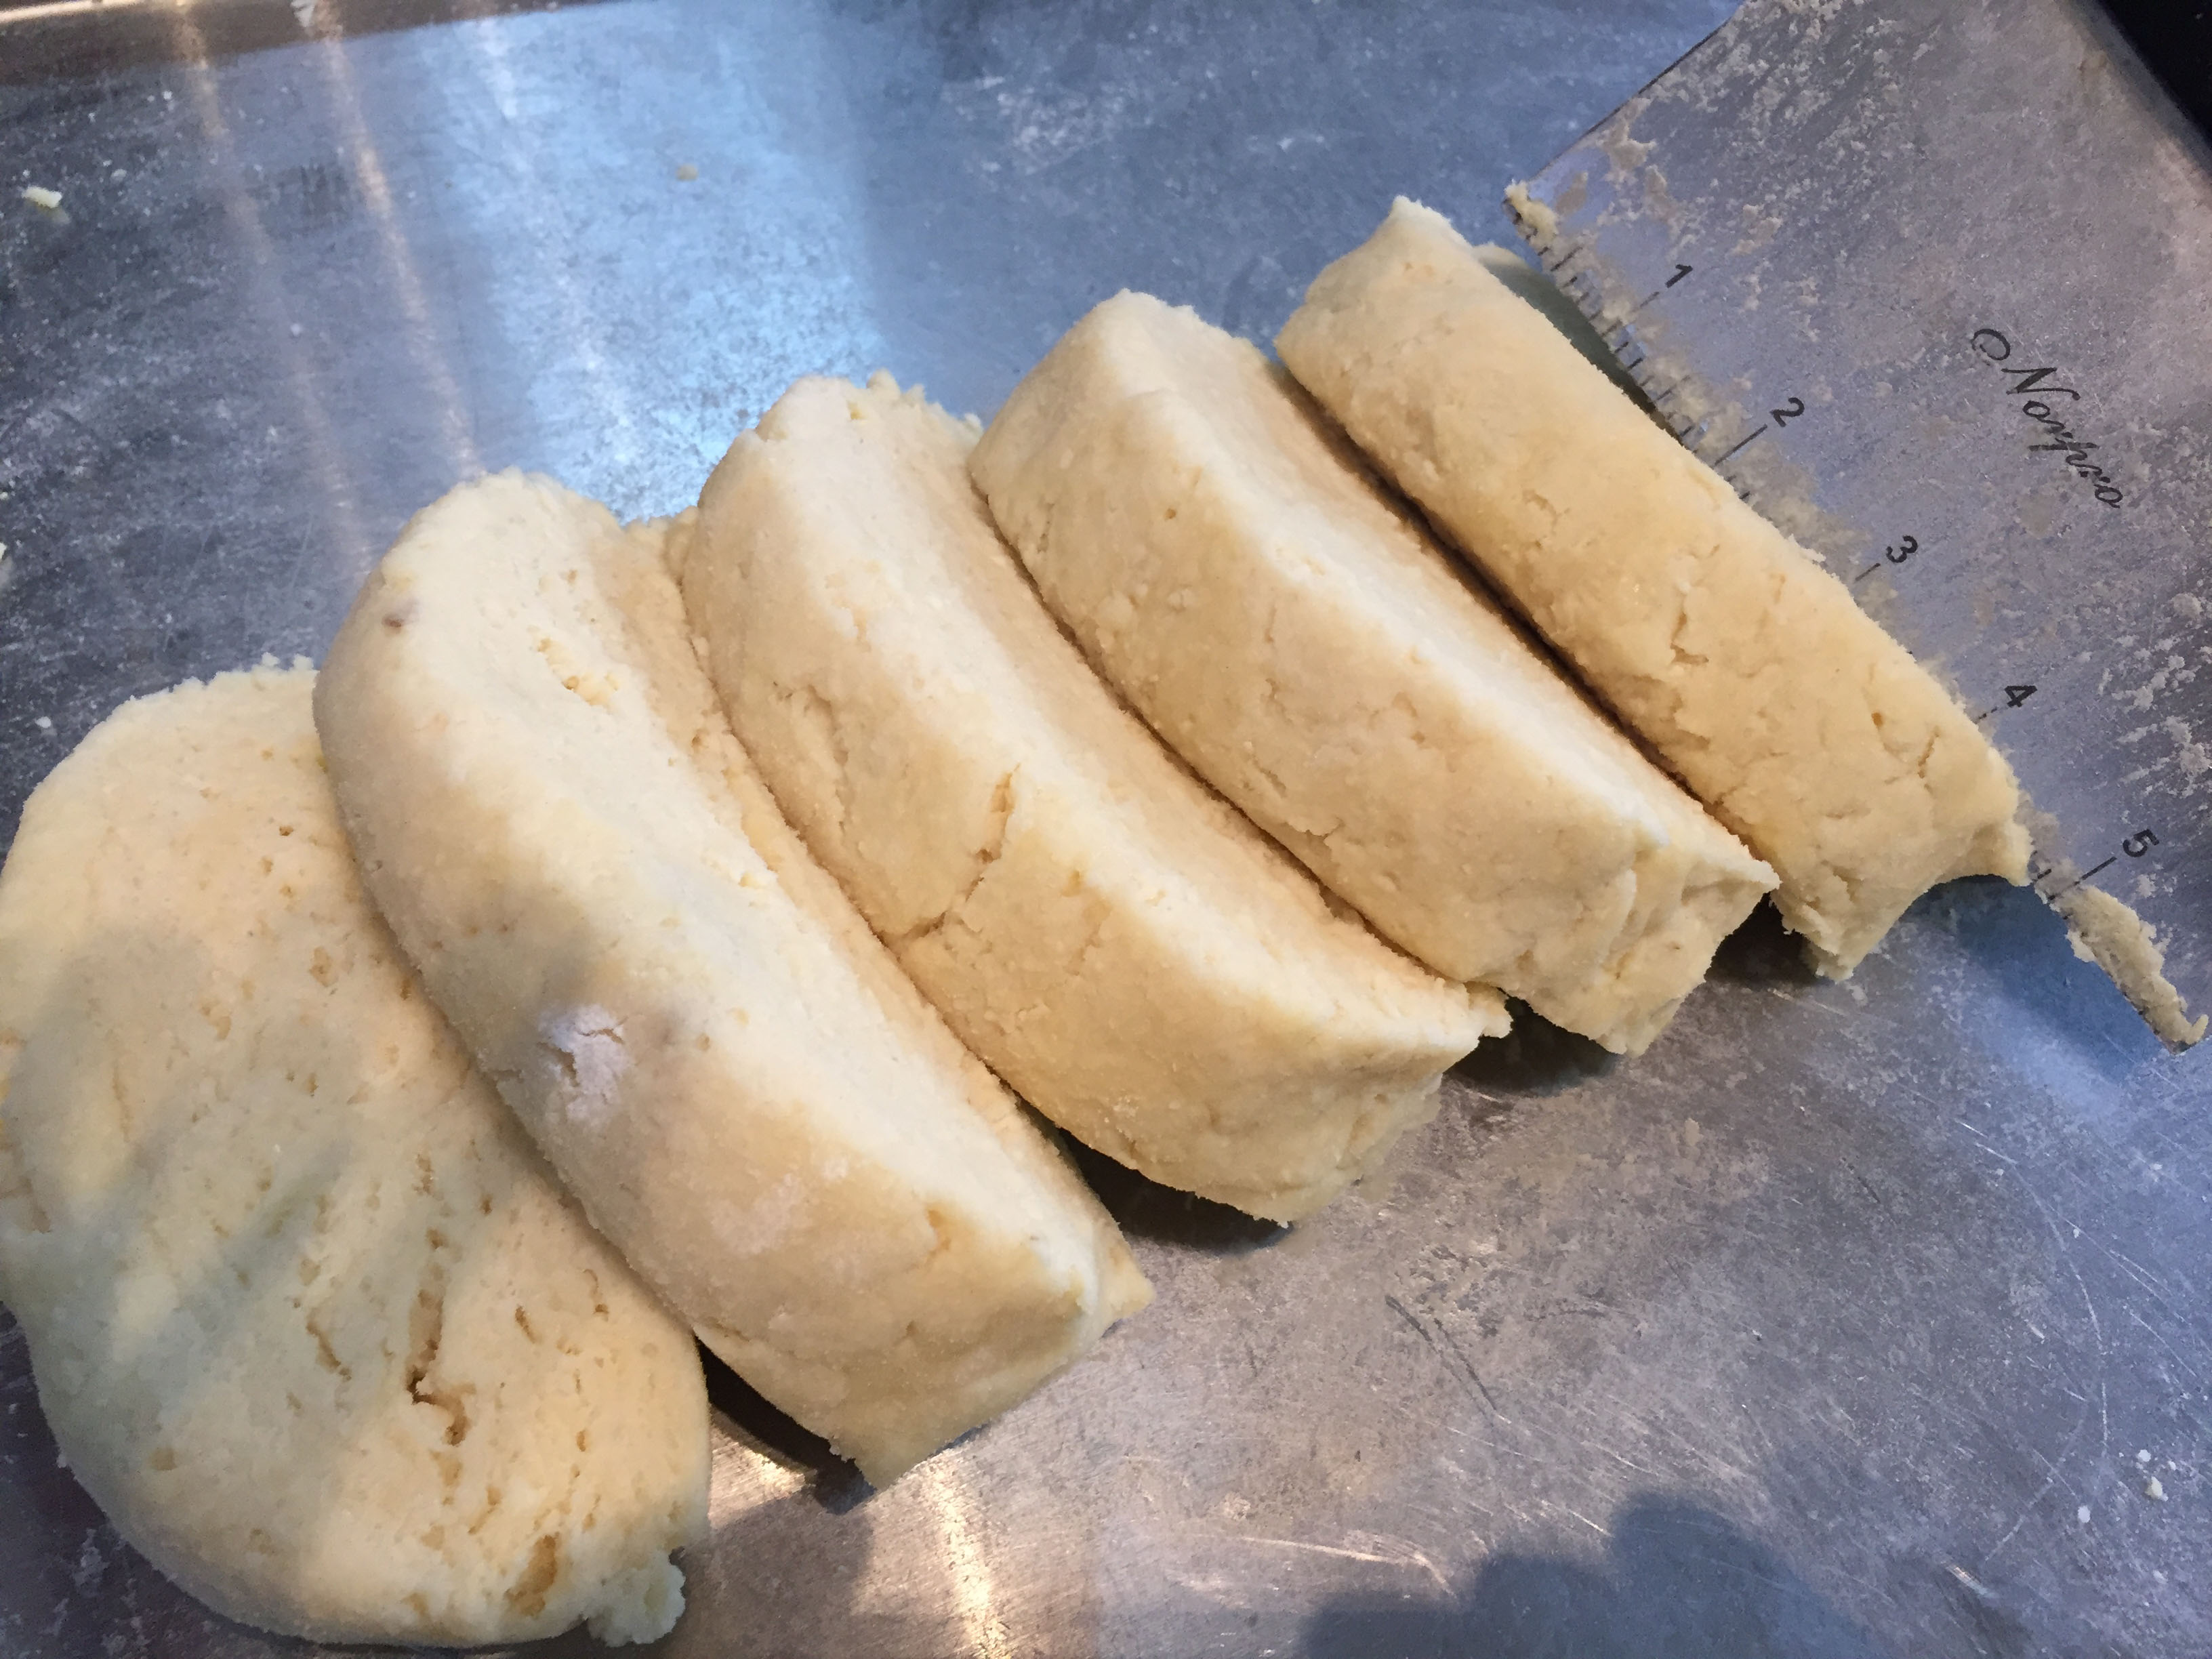 Sliced gnocchi dough